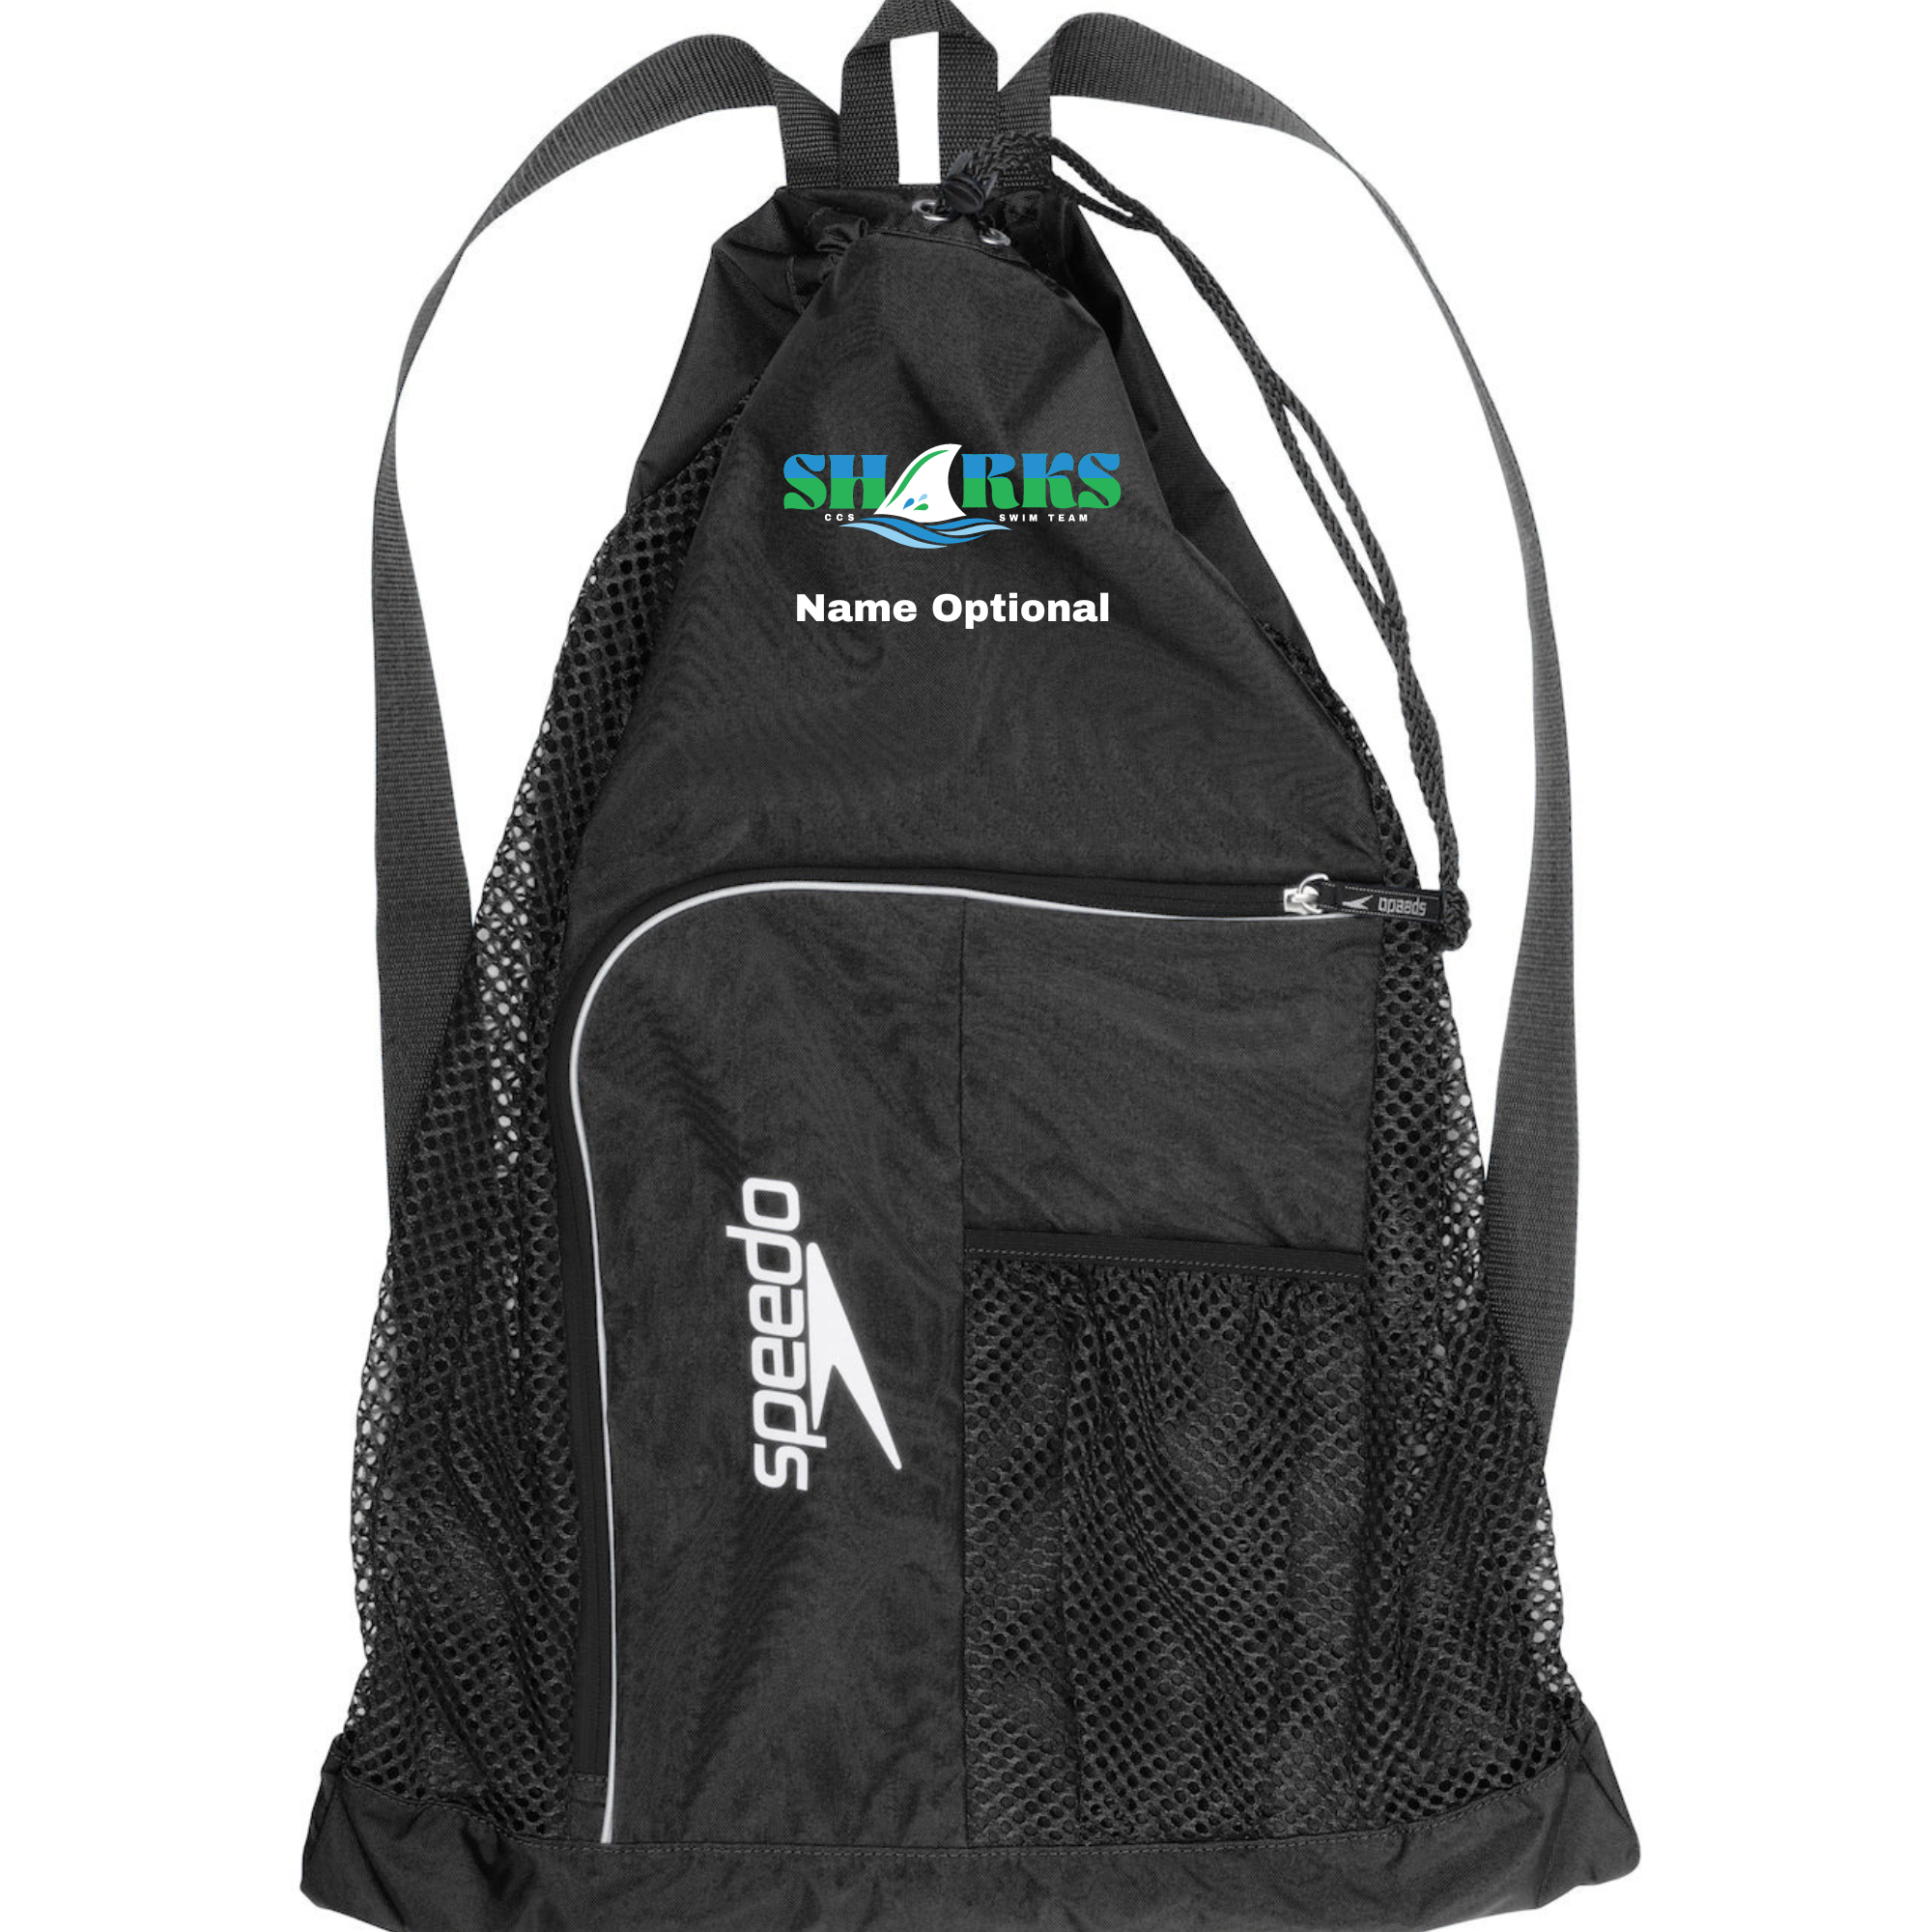 Speedo Deluxe Ventilator Backpack (Customized) - CCOS